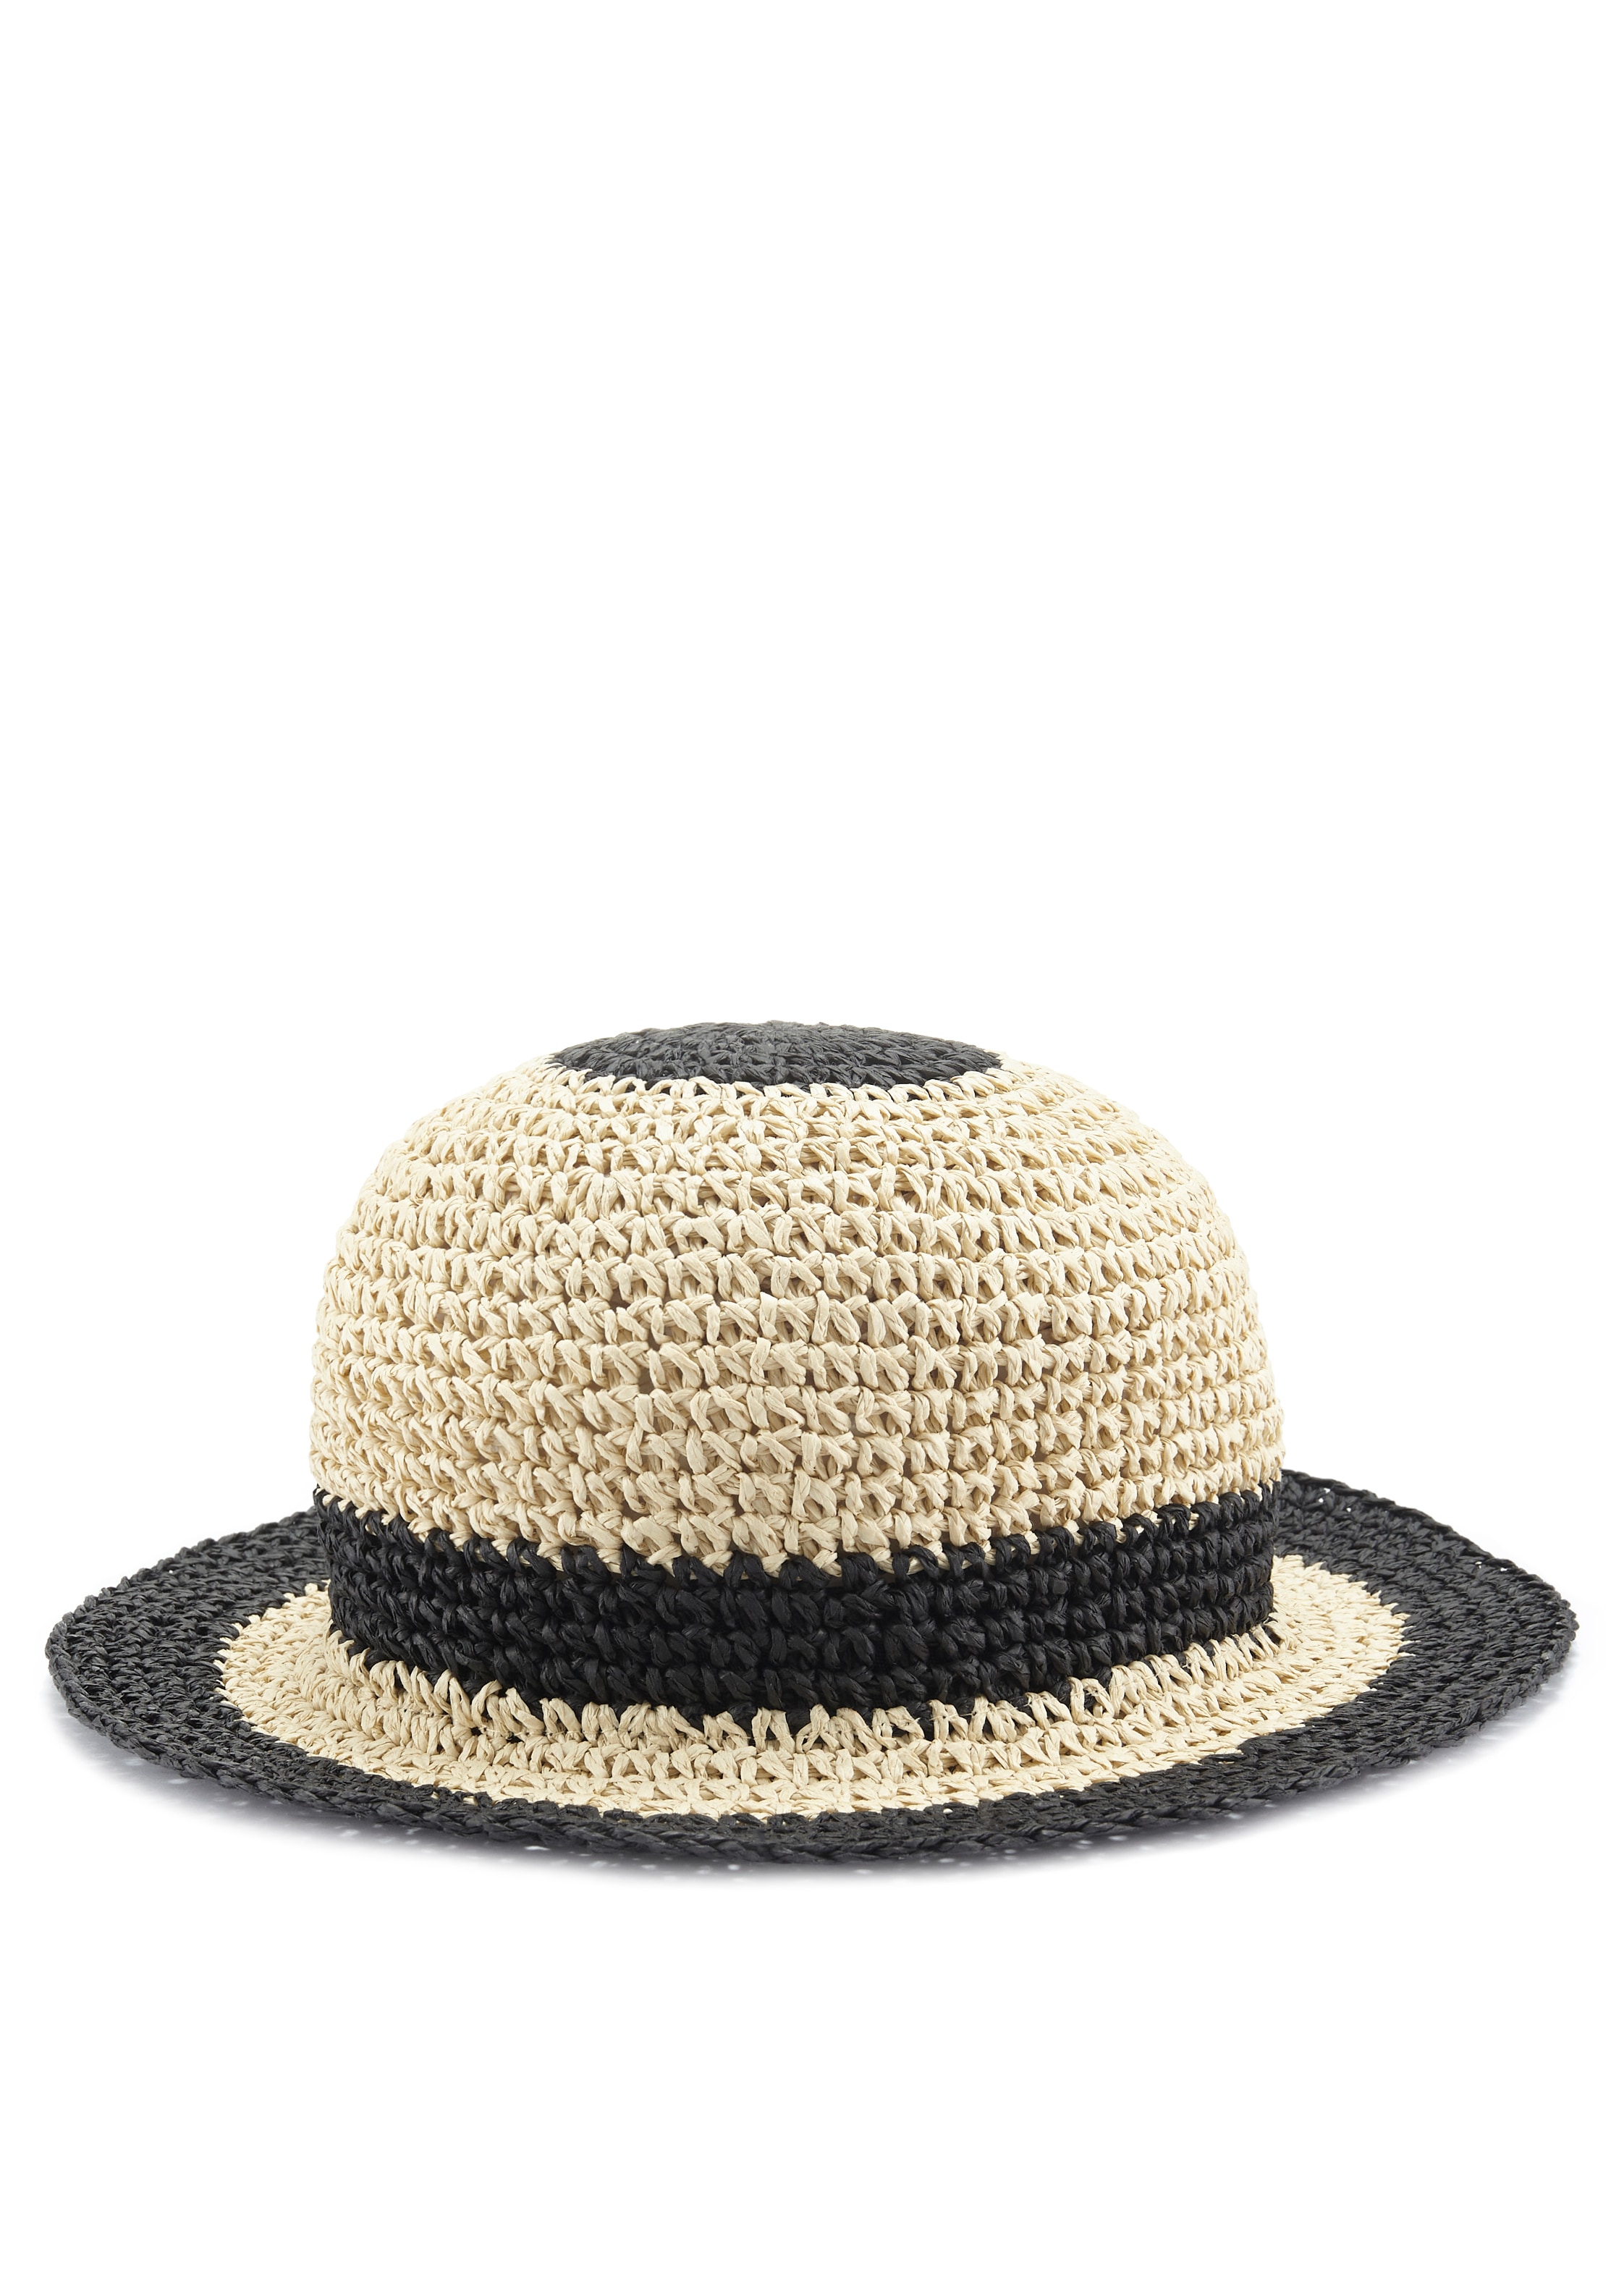 LASCANA Strohhut, Bucket Hat aus Kopfbedeckung kaufen Sommerhut, | online UNIVERSAL Stroh, VEGAN